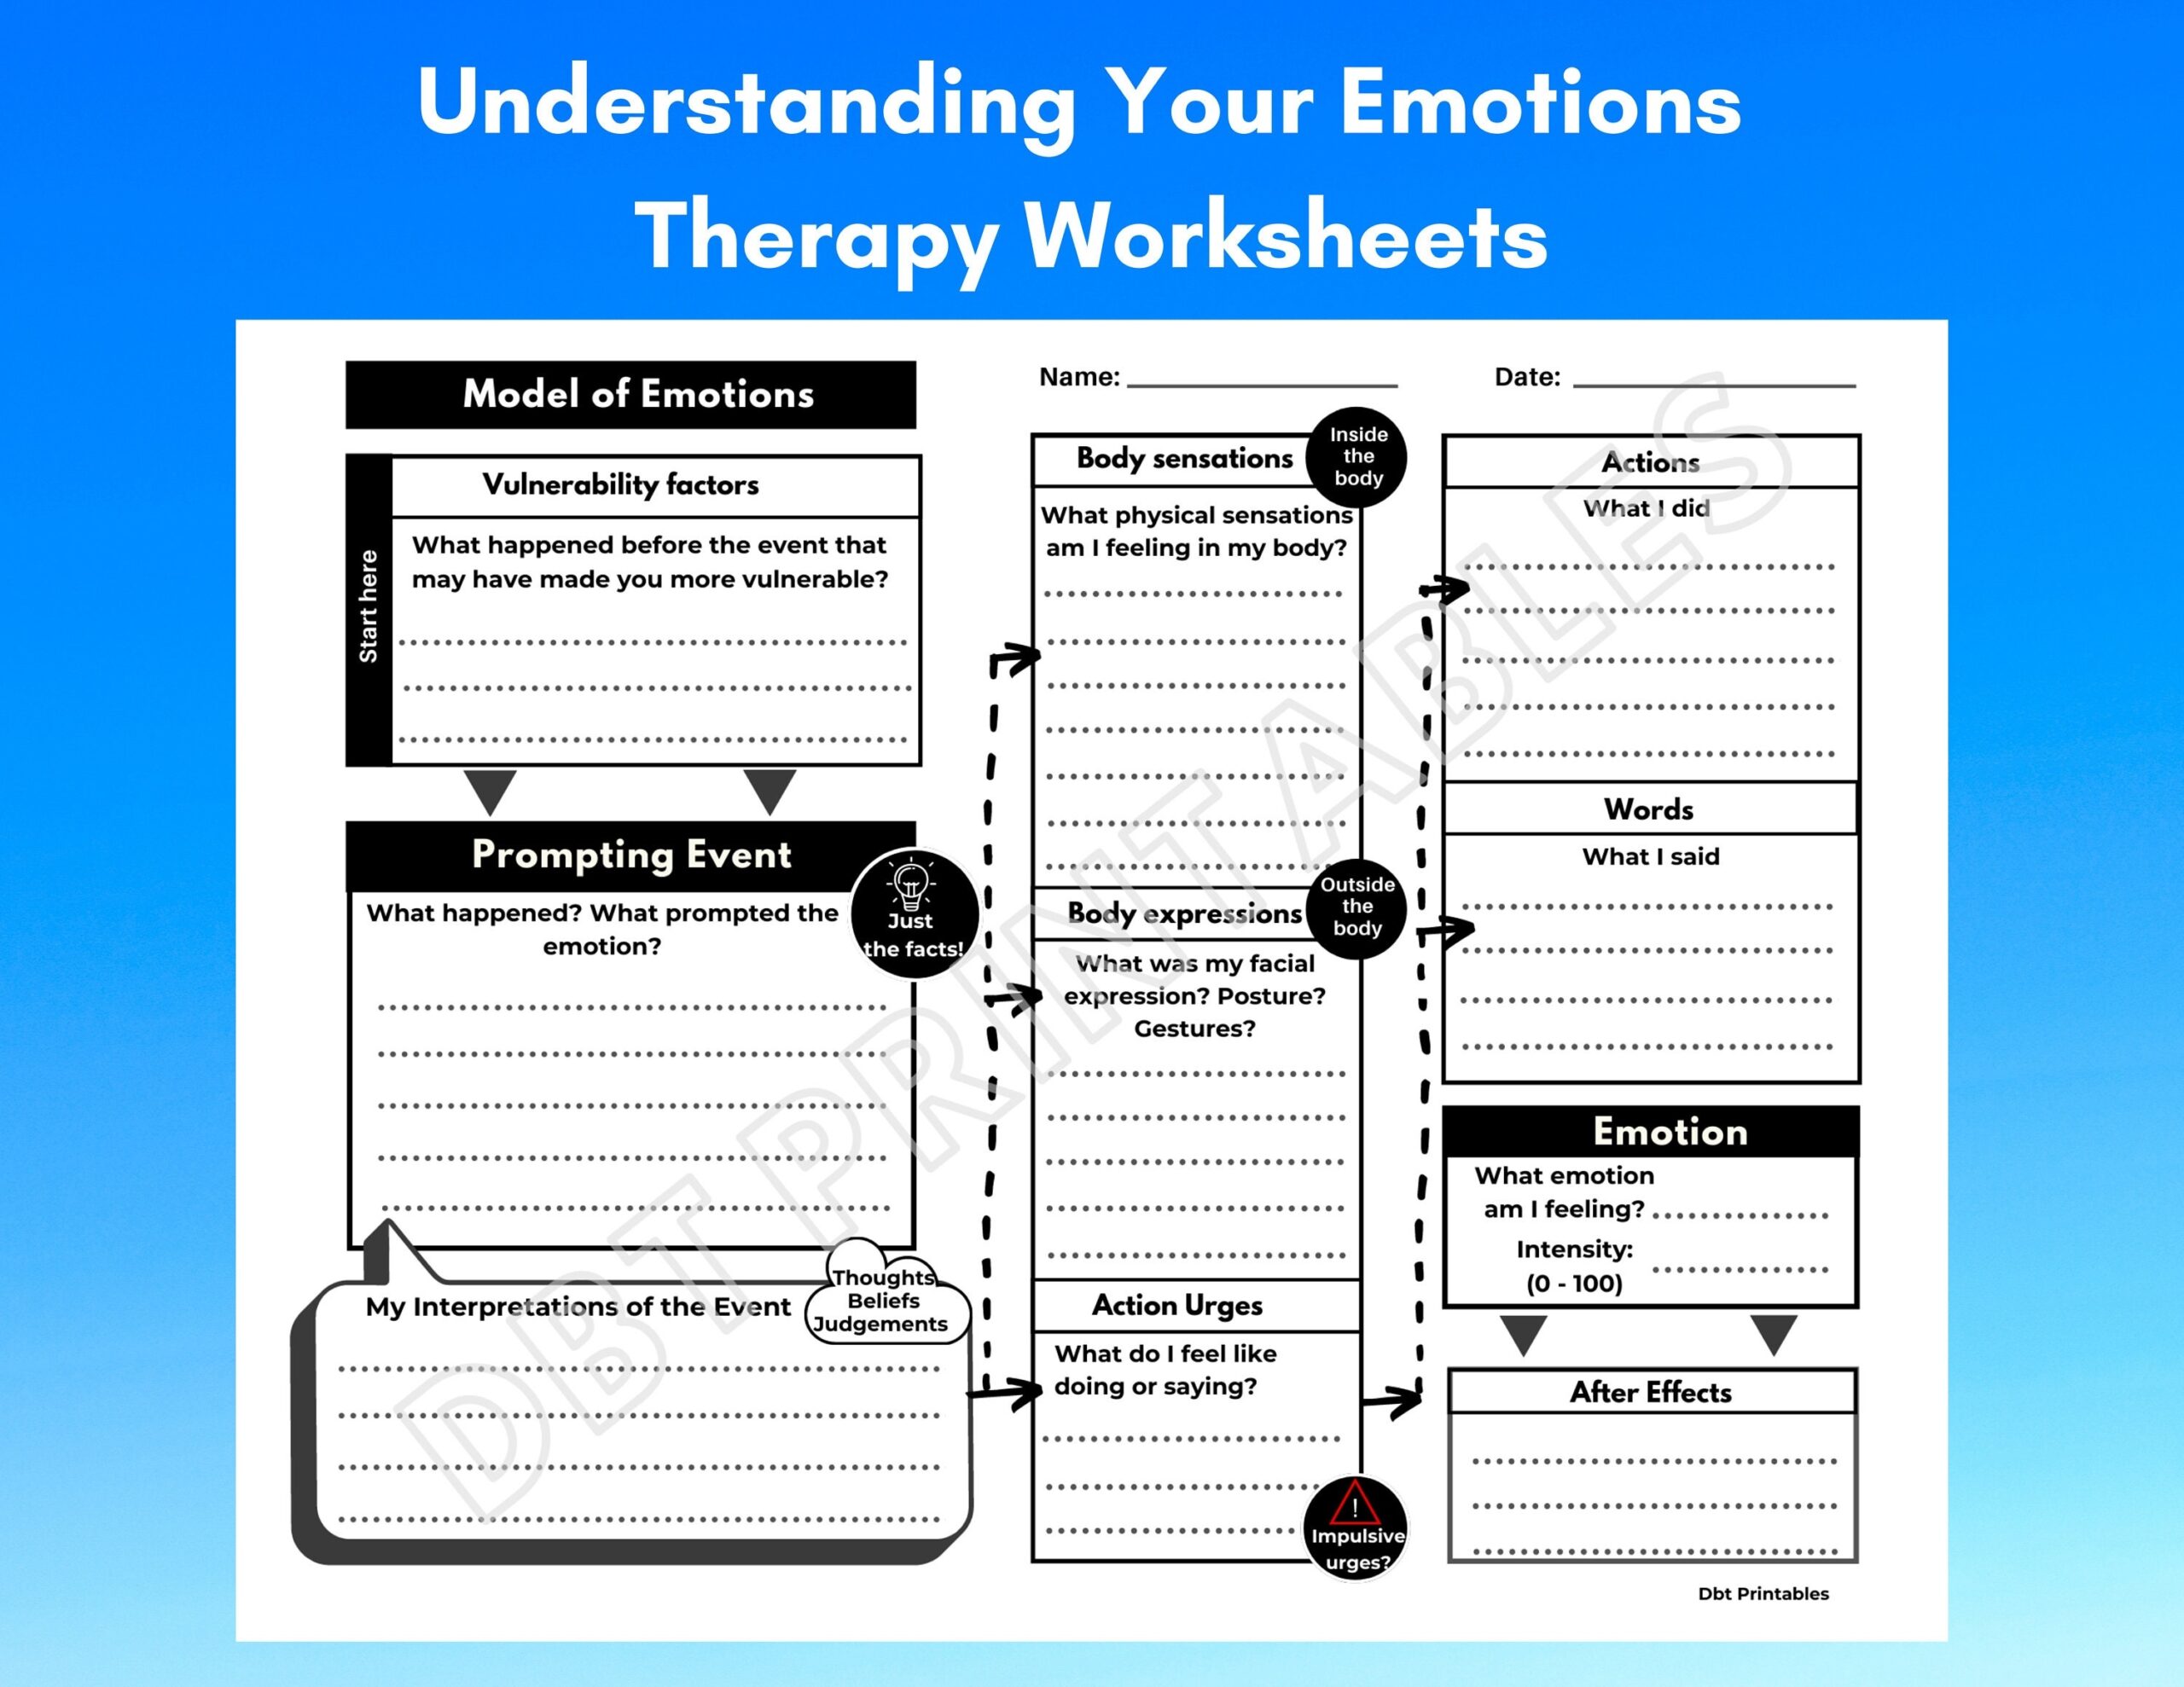 DBT Emotional Regulation Worksheet